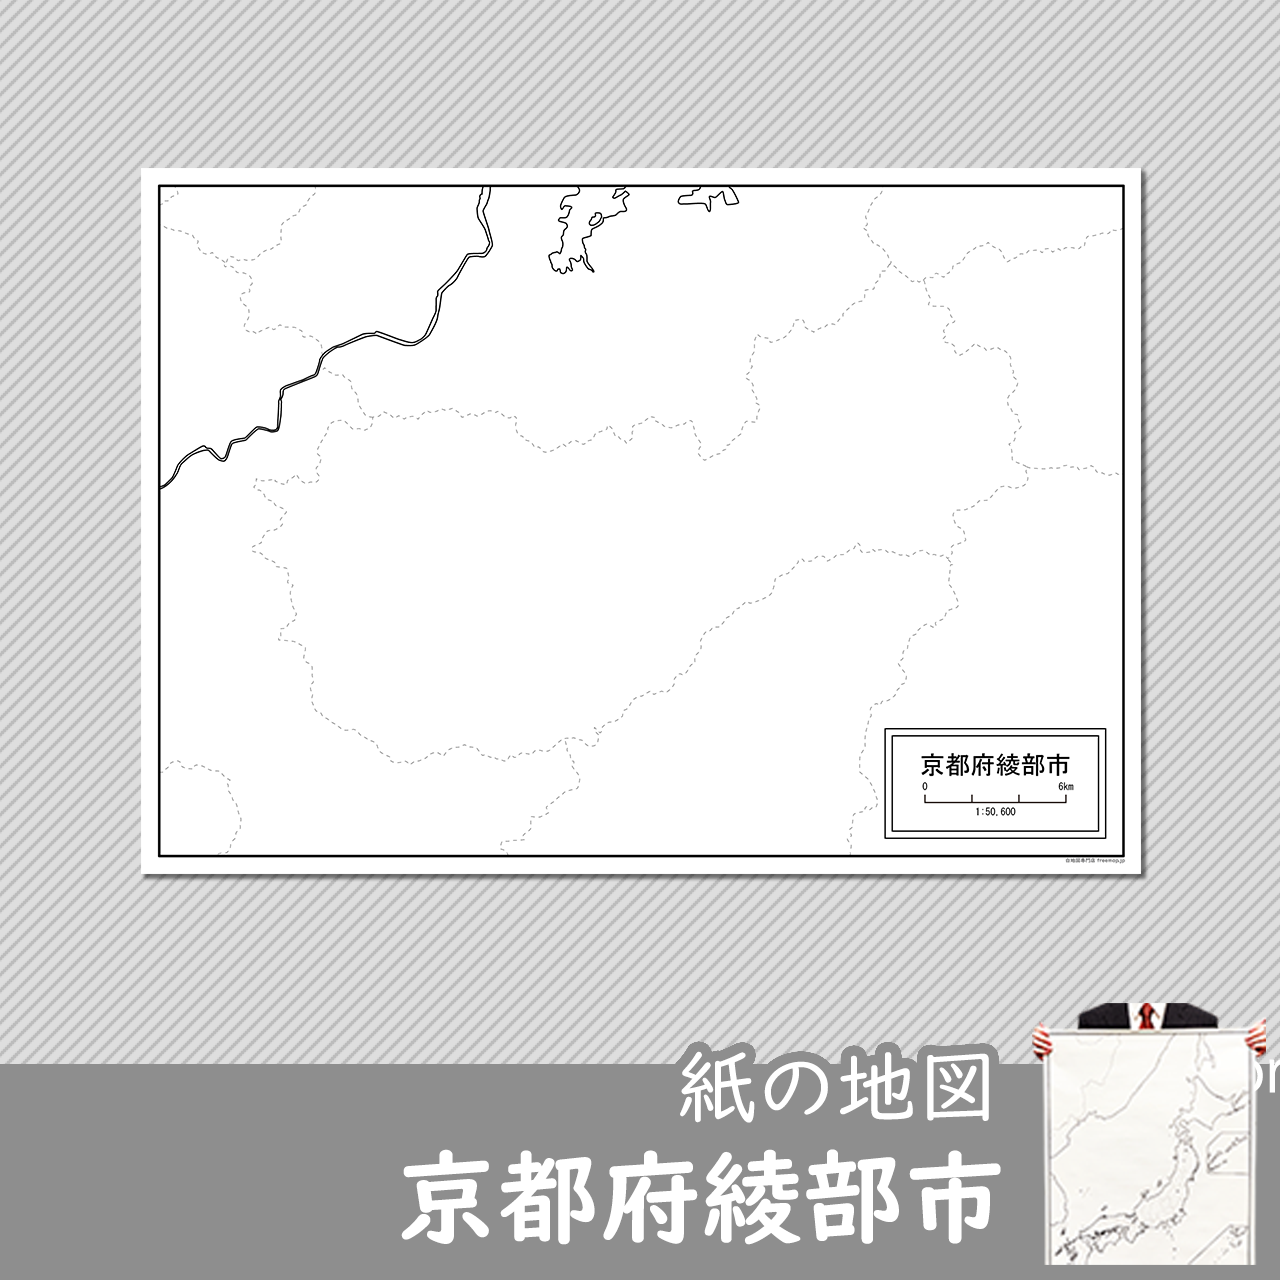 綾部市の紙の白地図のサムネイル